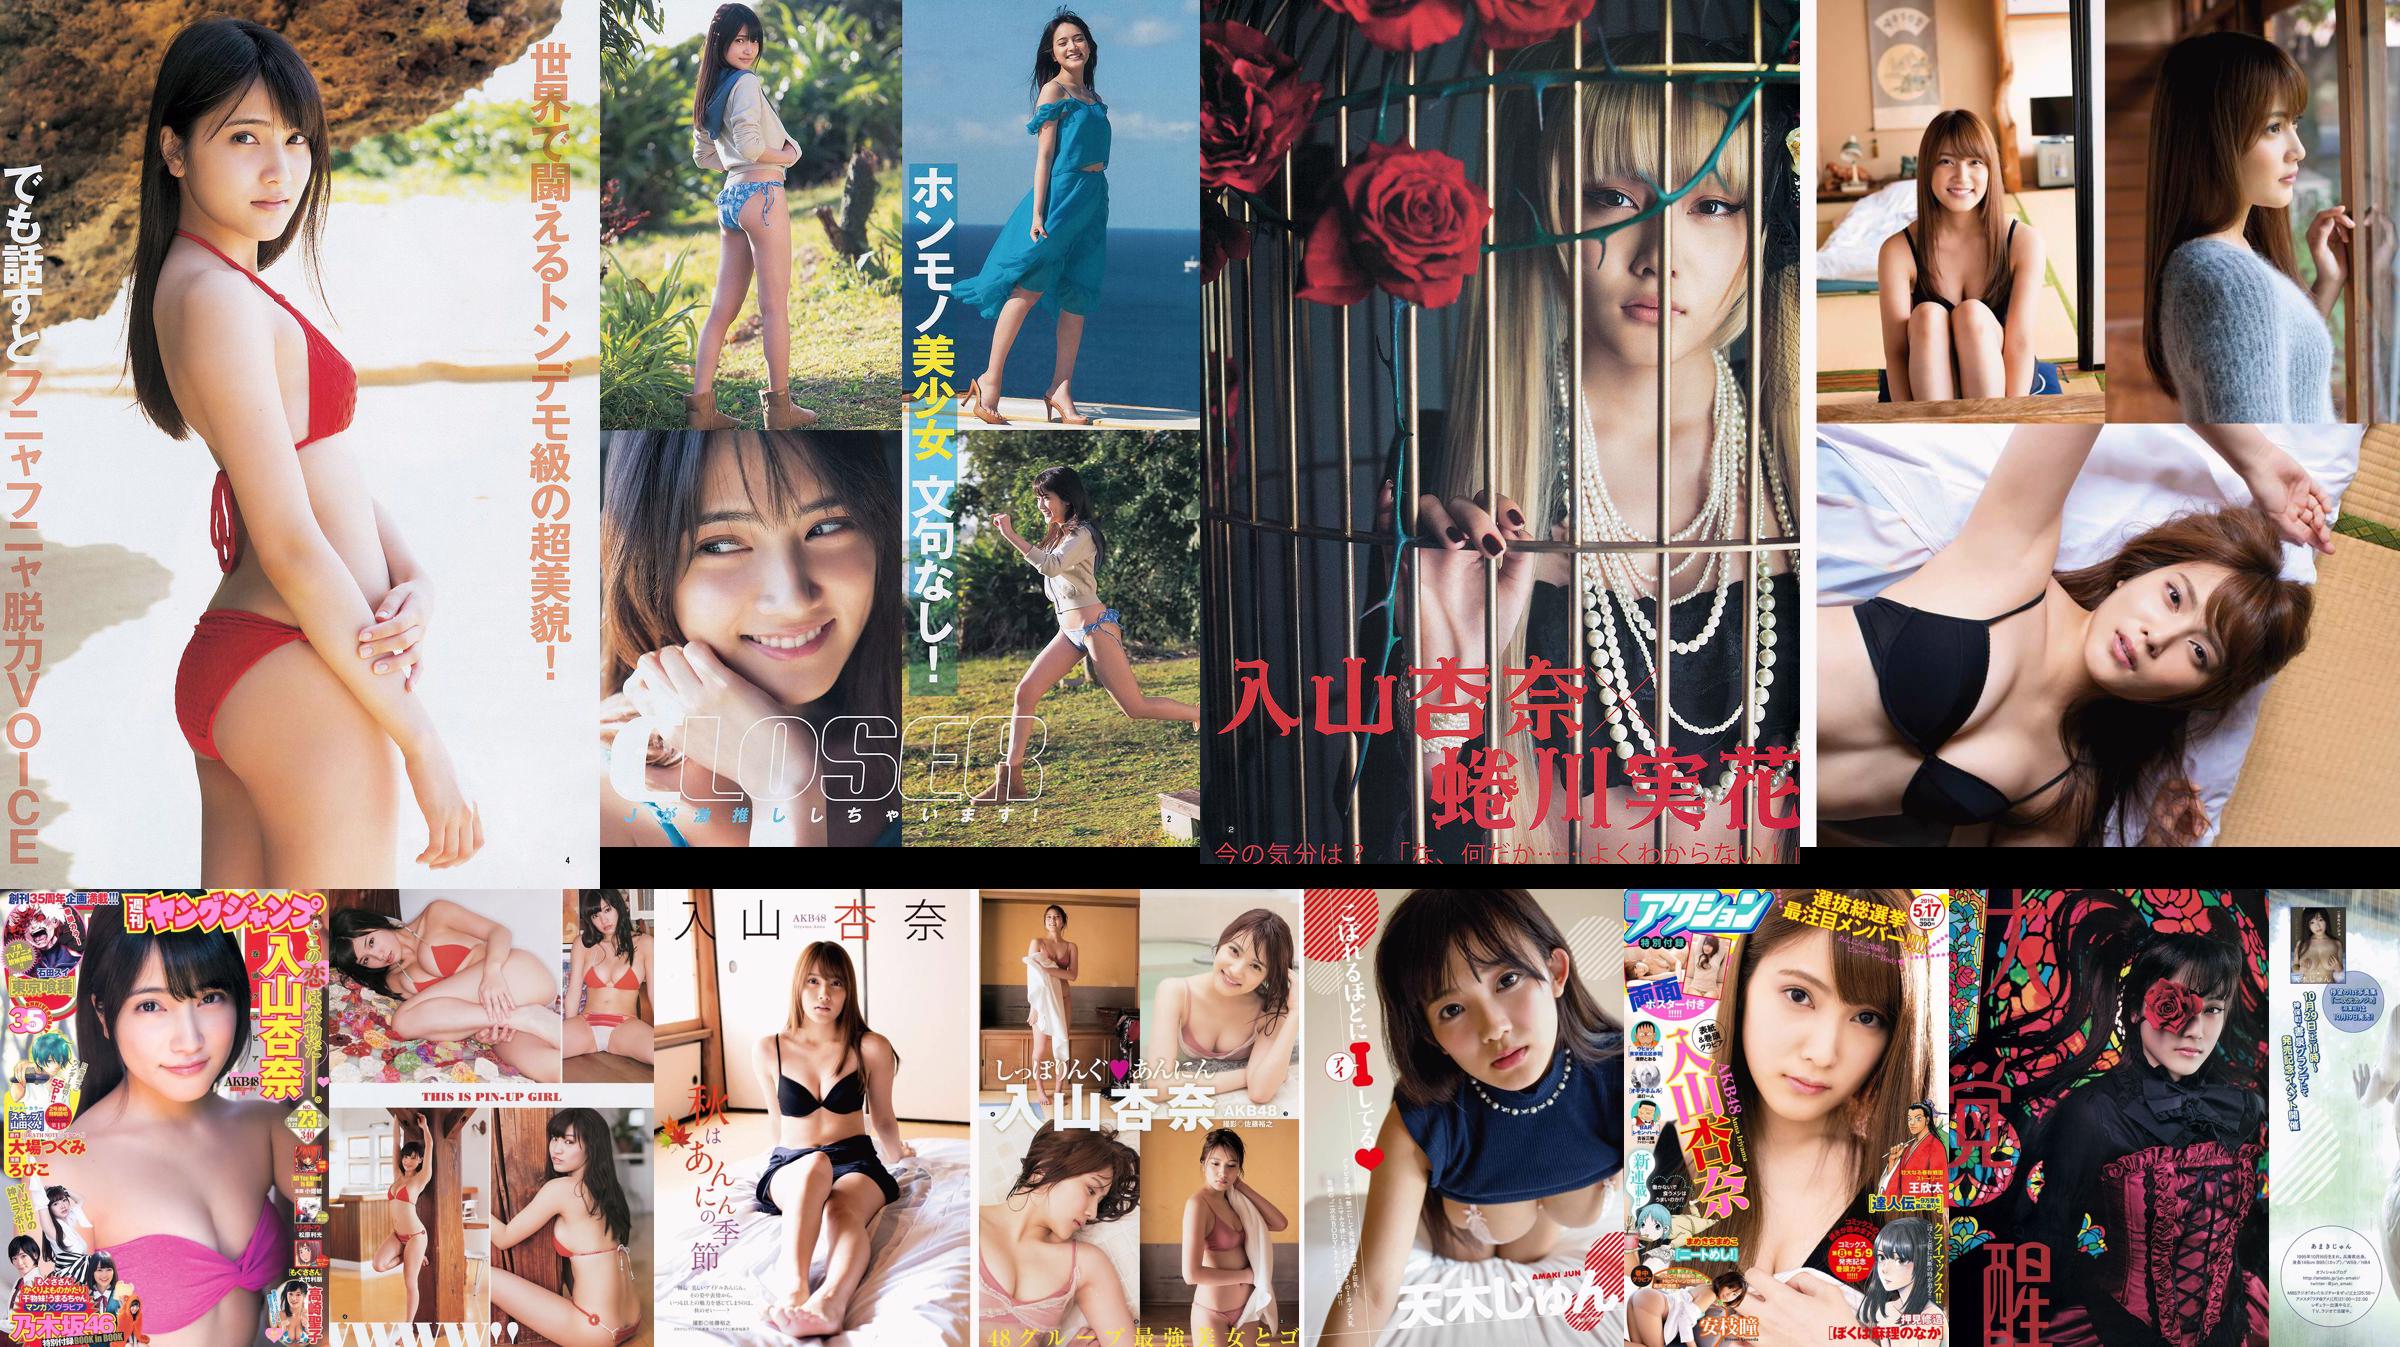 Anna Iriyama Yuki Mio Furuhata Nawa [每週年輕跳] 2013 No.32照片 No.71072c 第1頁